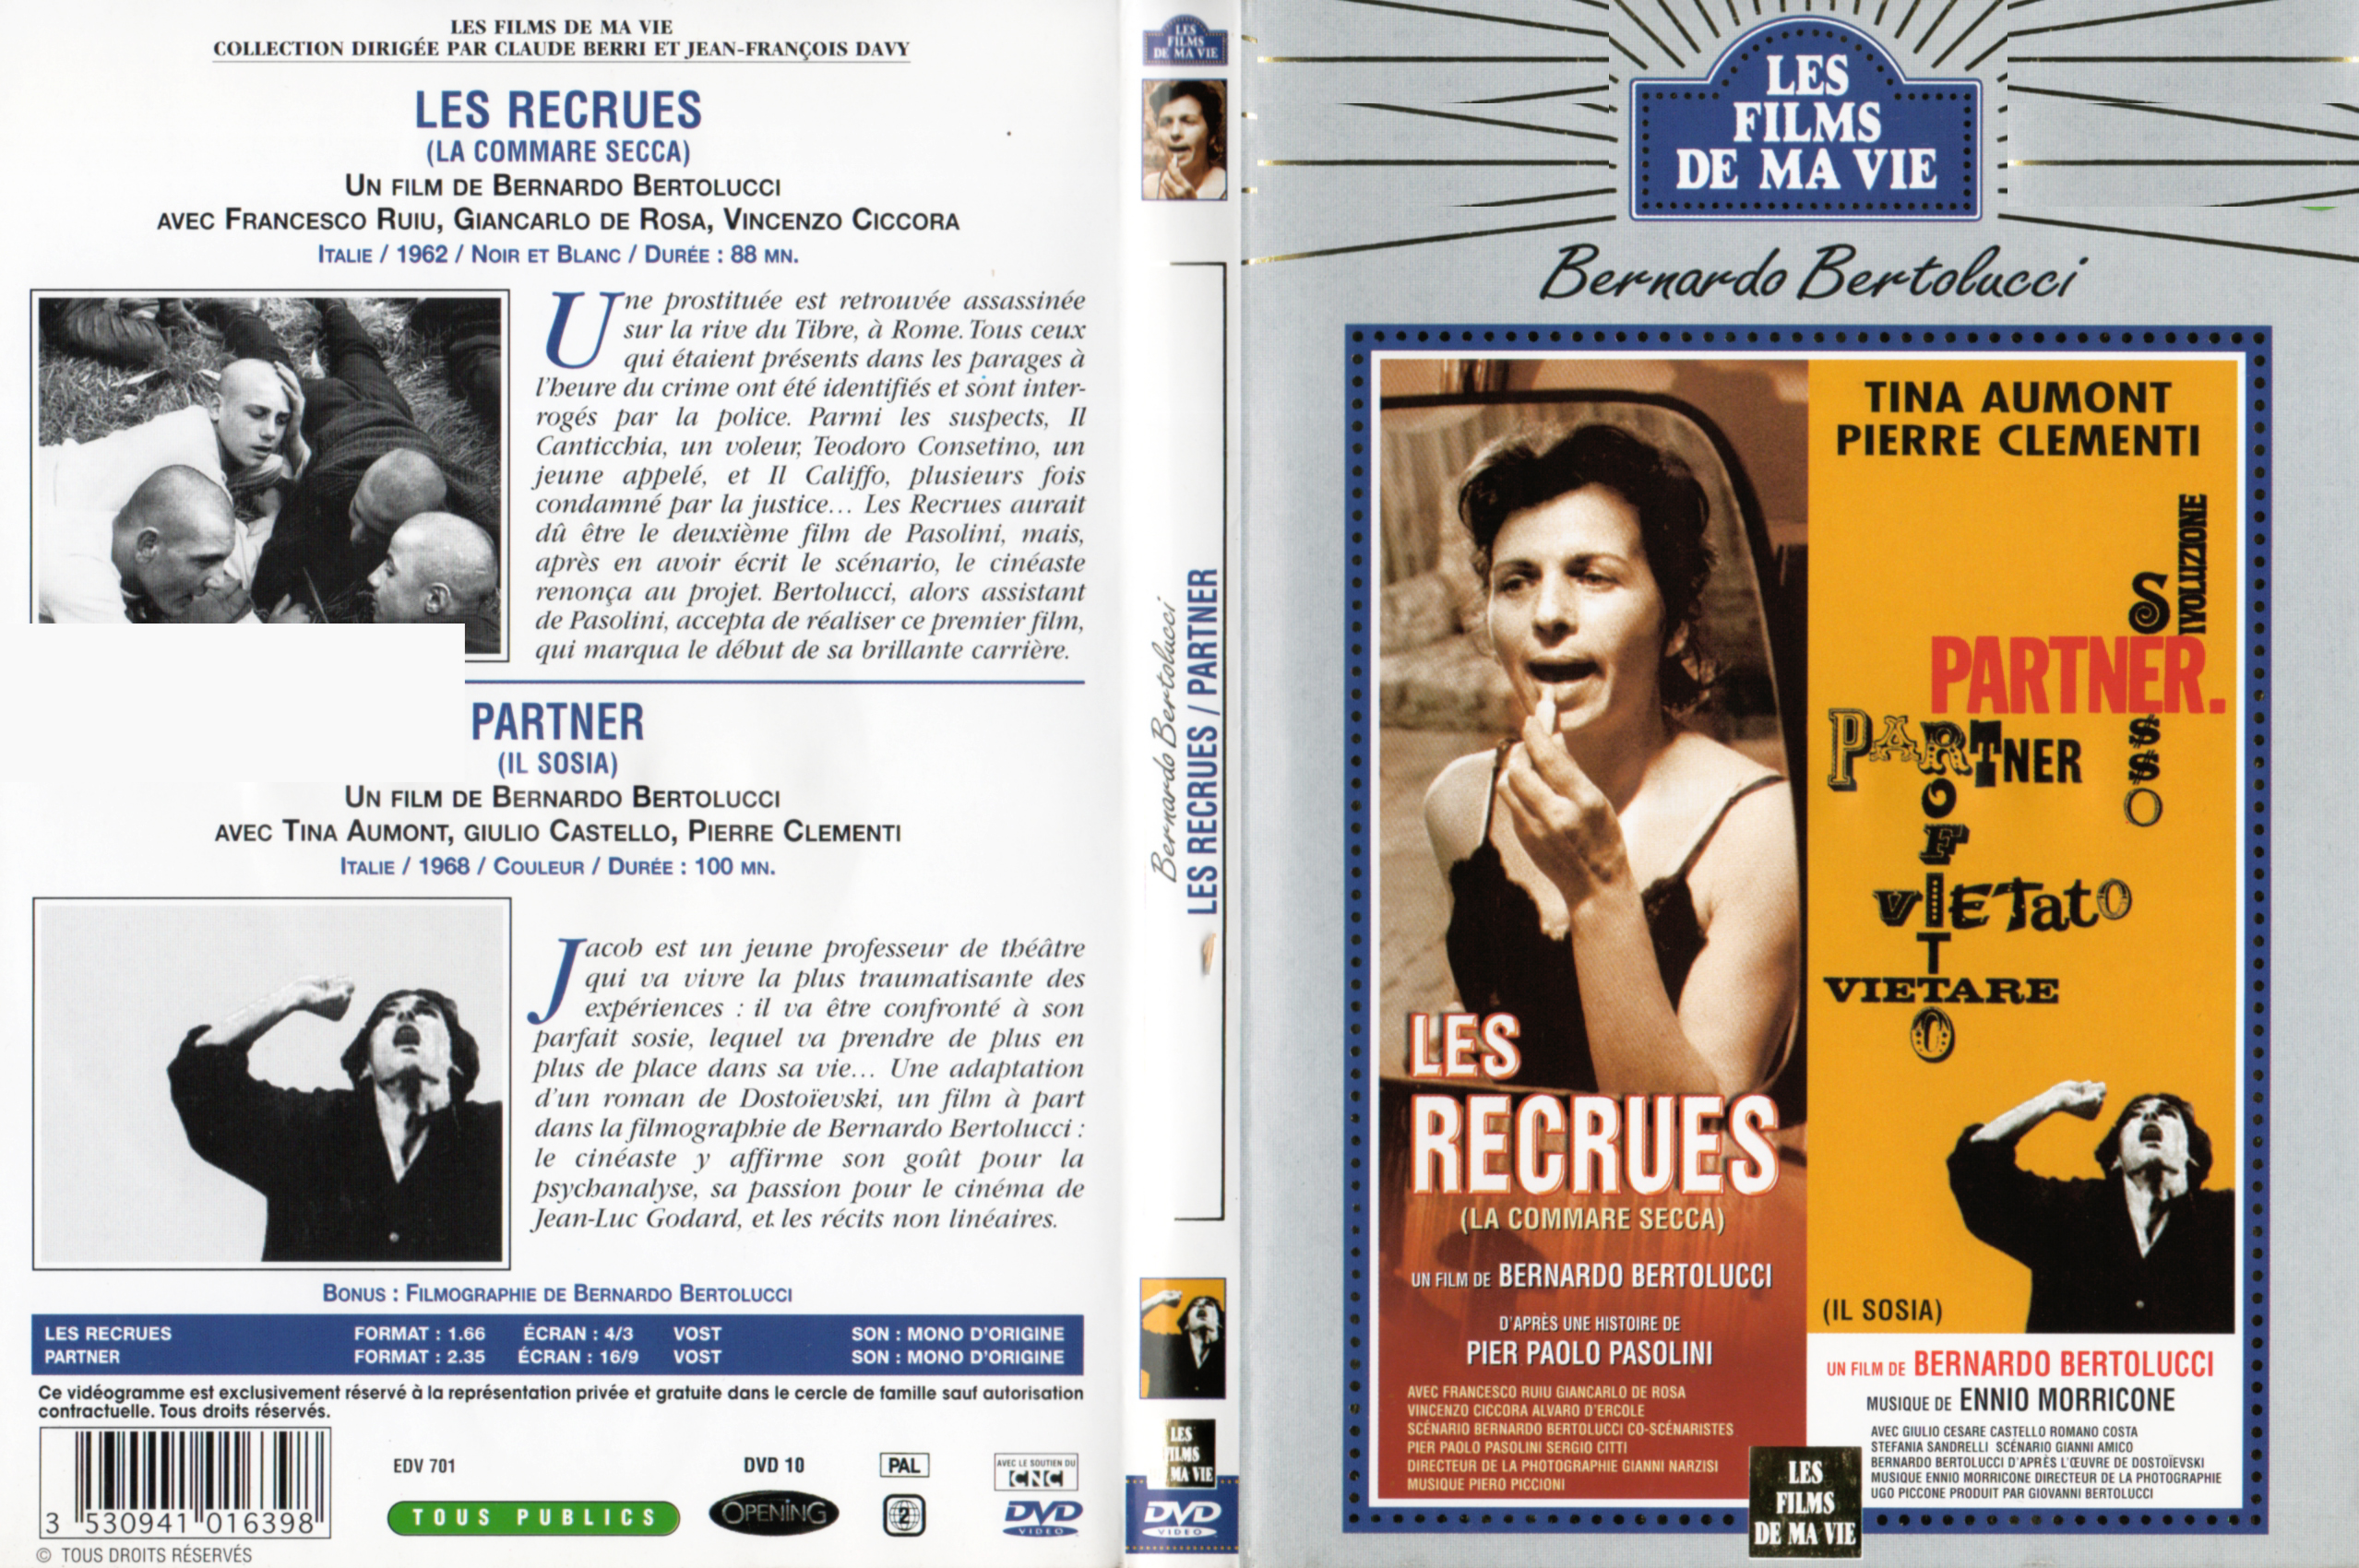 Jaquette DVD Les recrues + Partner